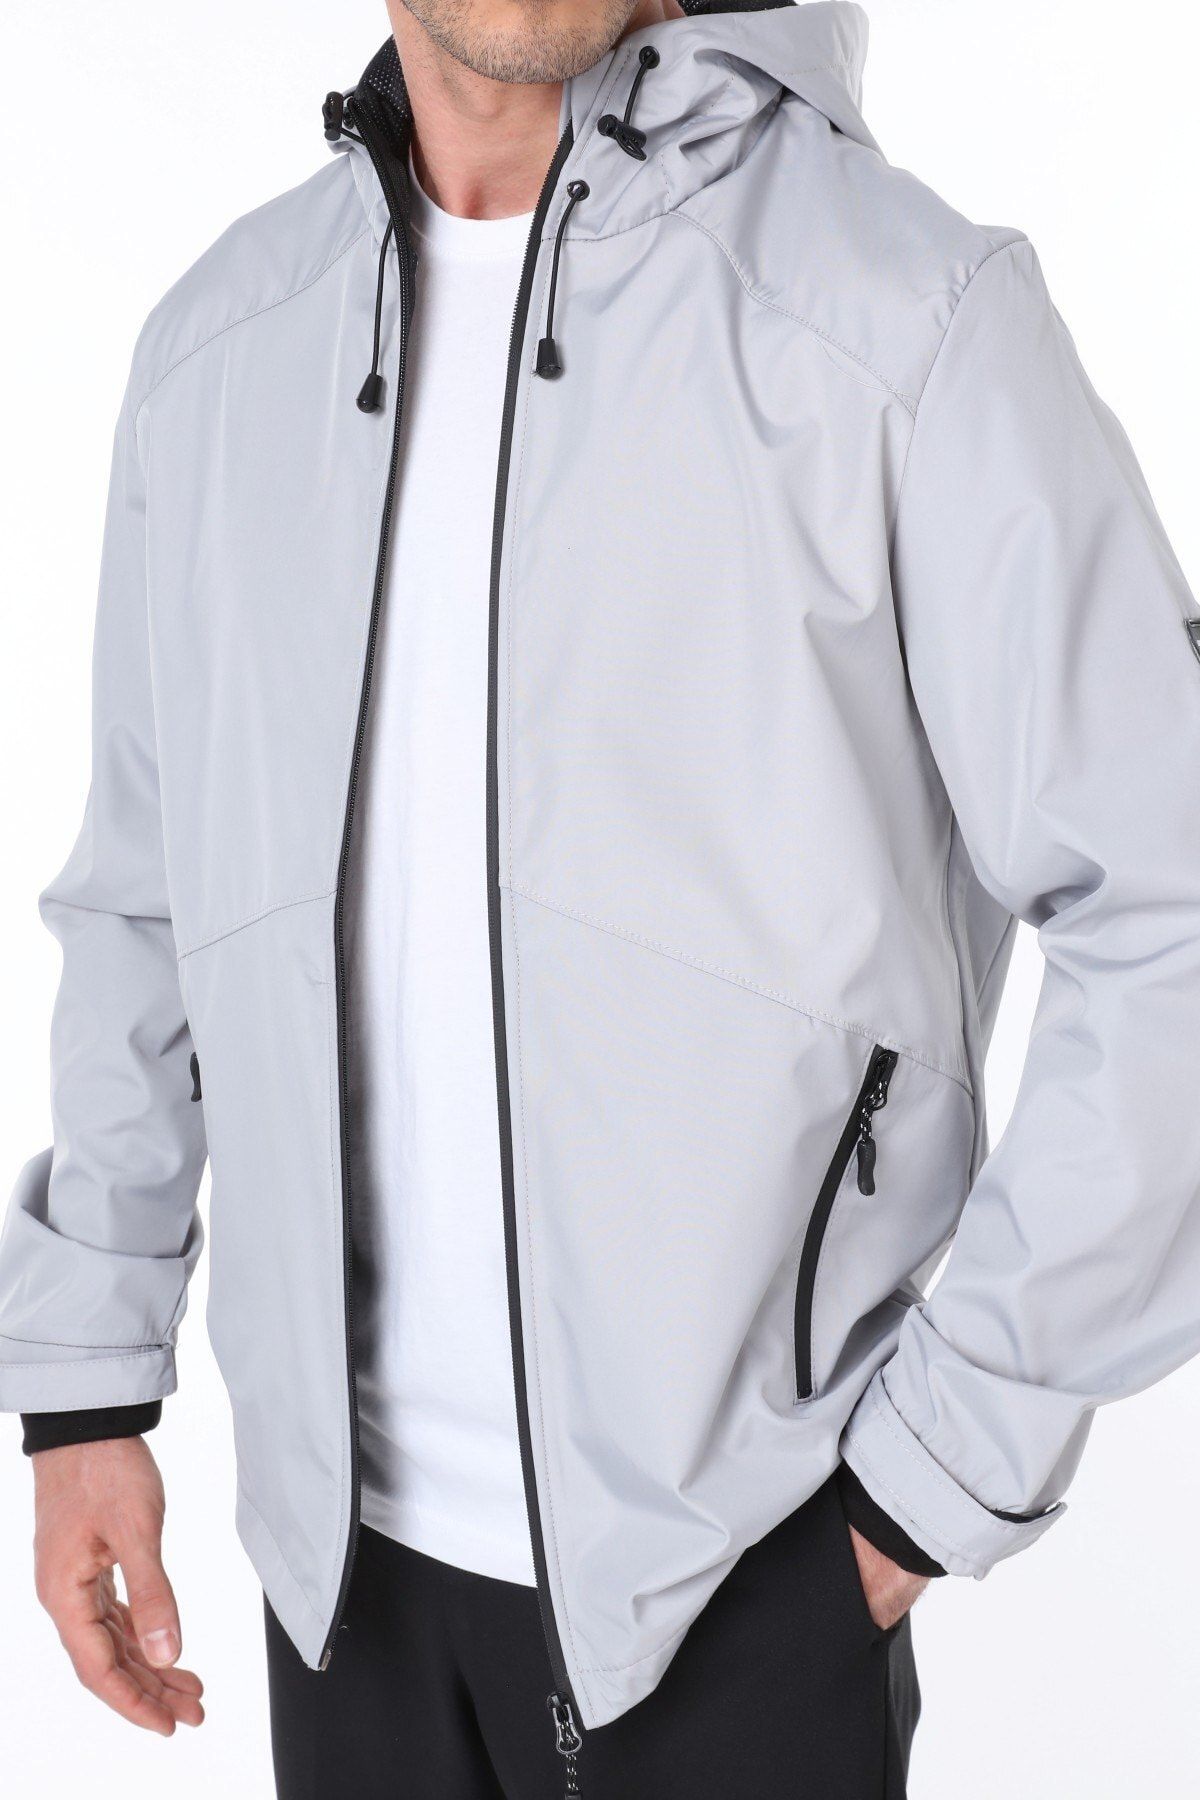 Ghassy Co Erkek Gri Rüzgarlık/Yağmurluk Outdoor Omuz Detaylı Mevsimlik Spor Ceket